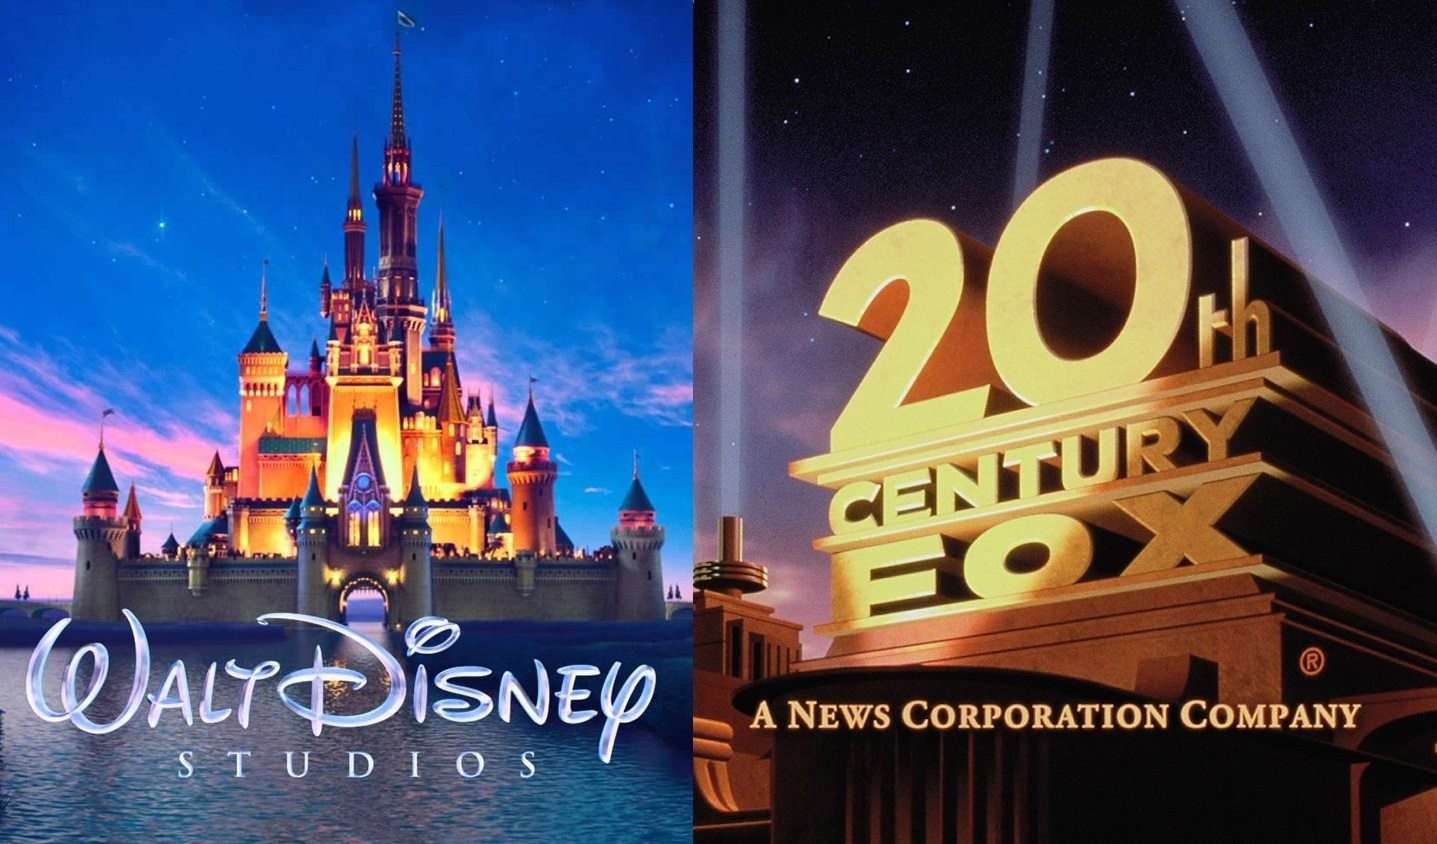 Disney encerra atividades do FOX Play para celular e Smart TV